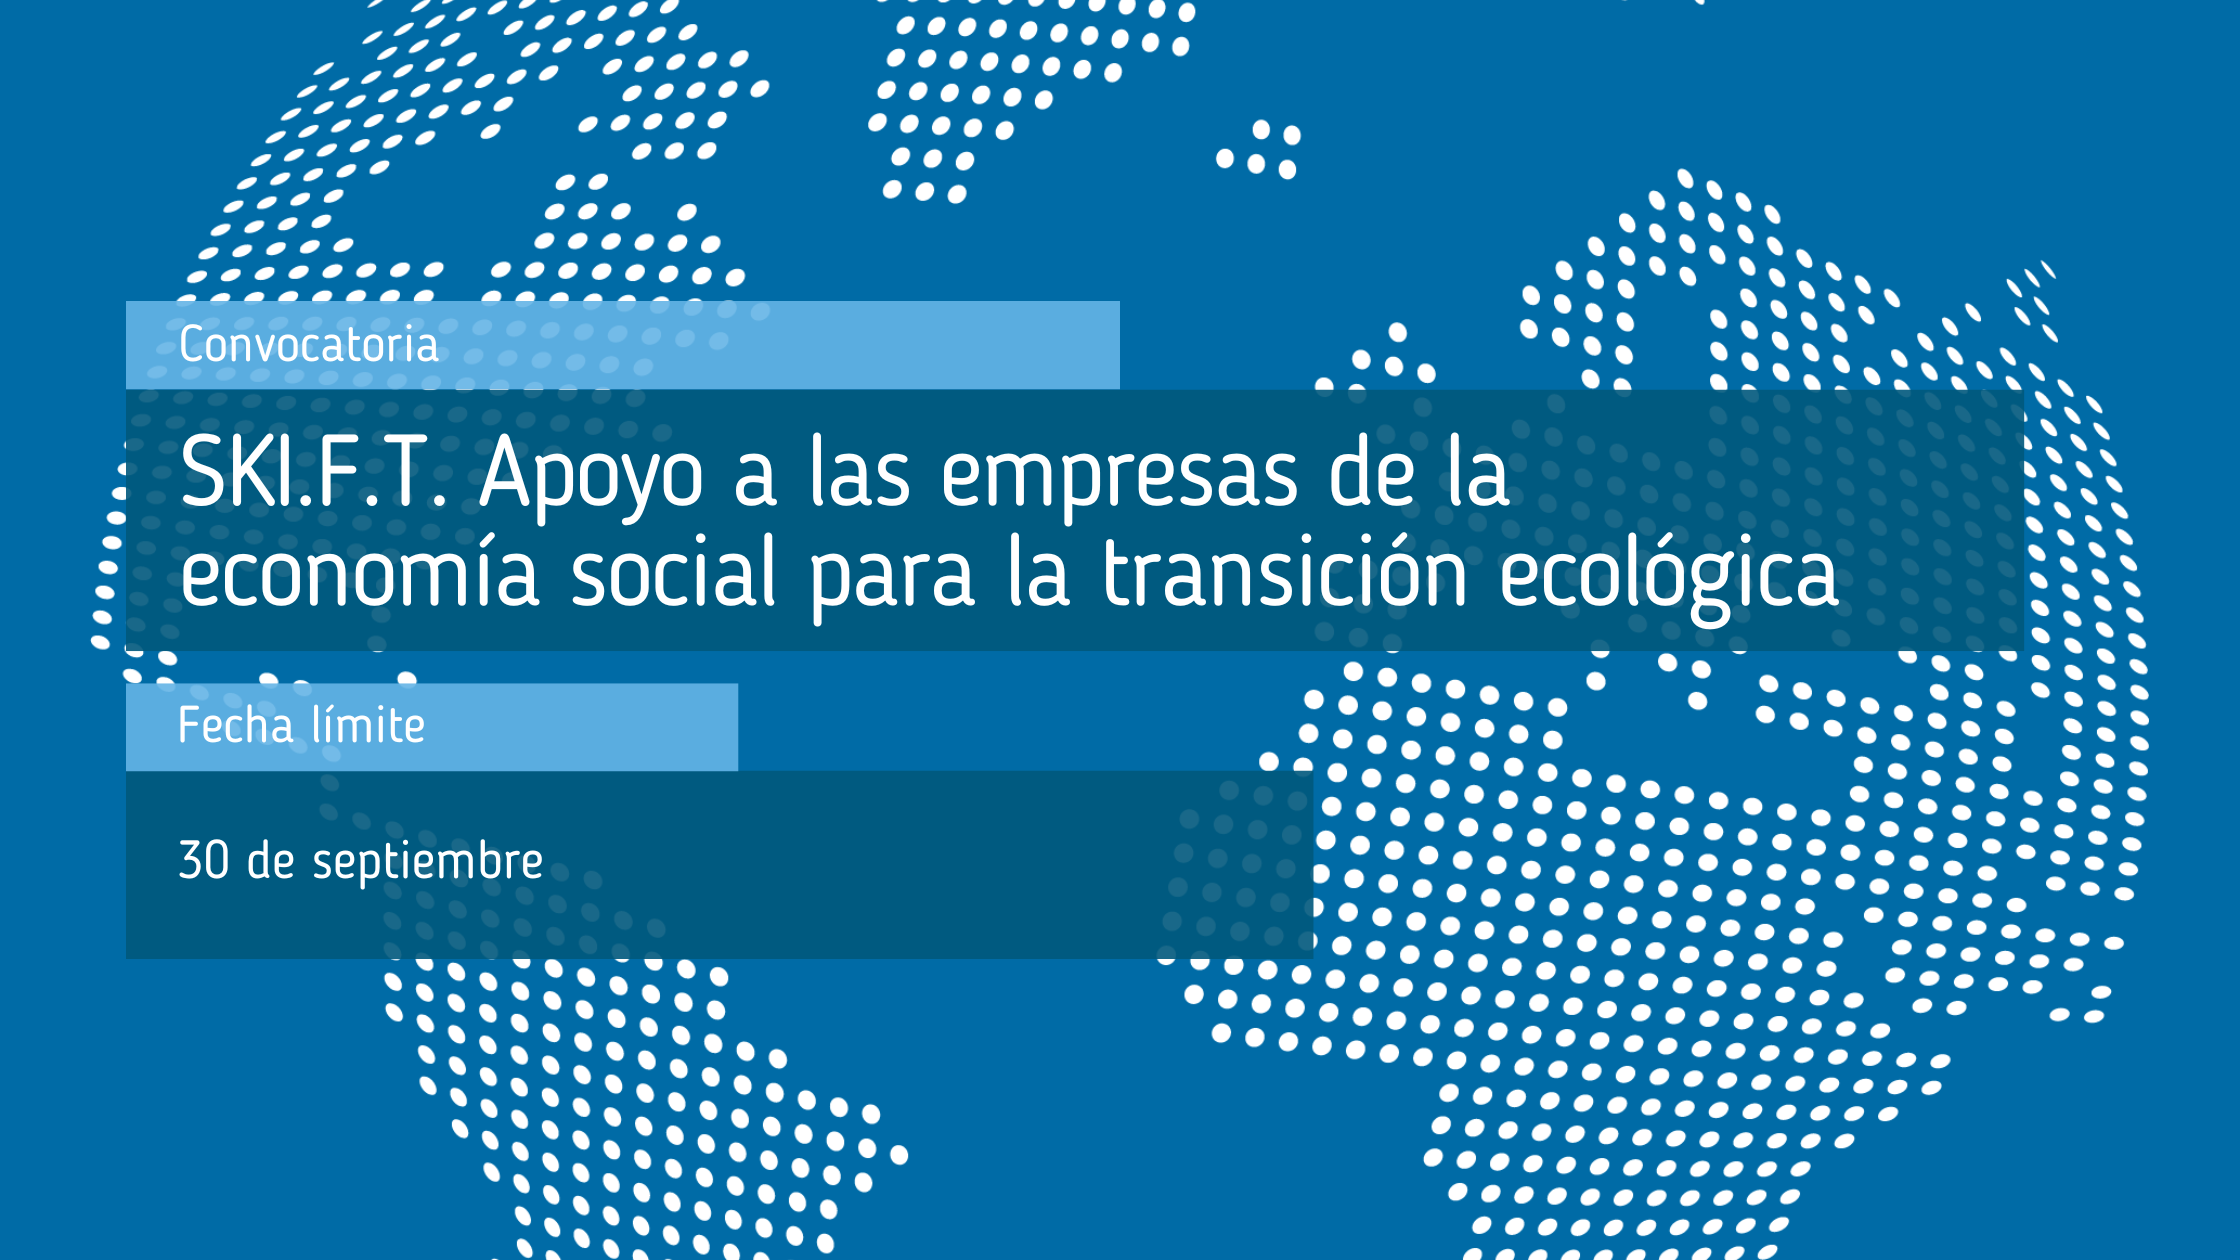 SKI_F_T_Apoyo_a_las_empresas_de_la_economía_social_para_la_transición_ecológica